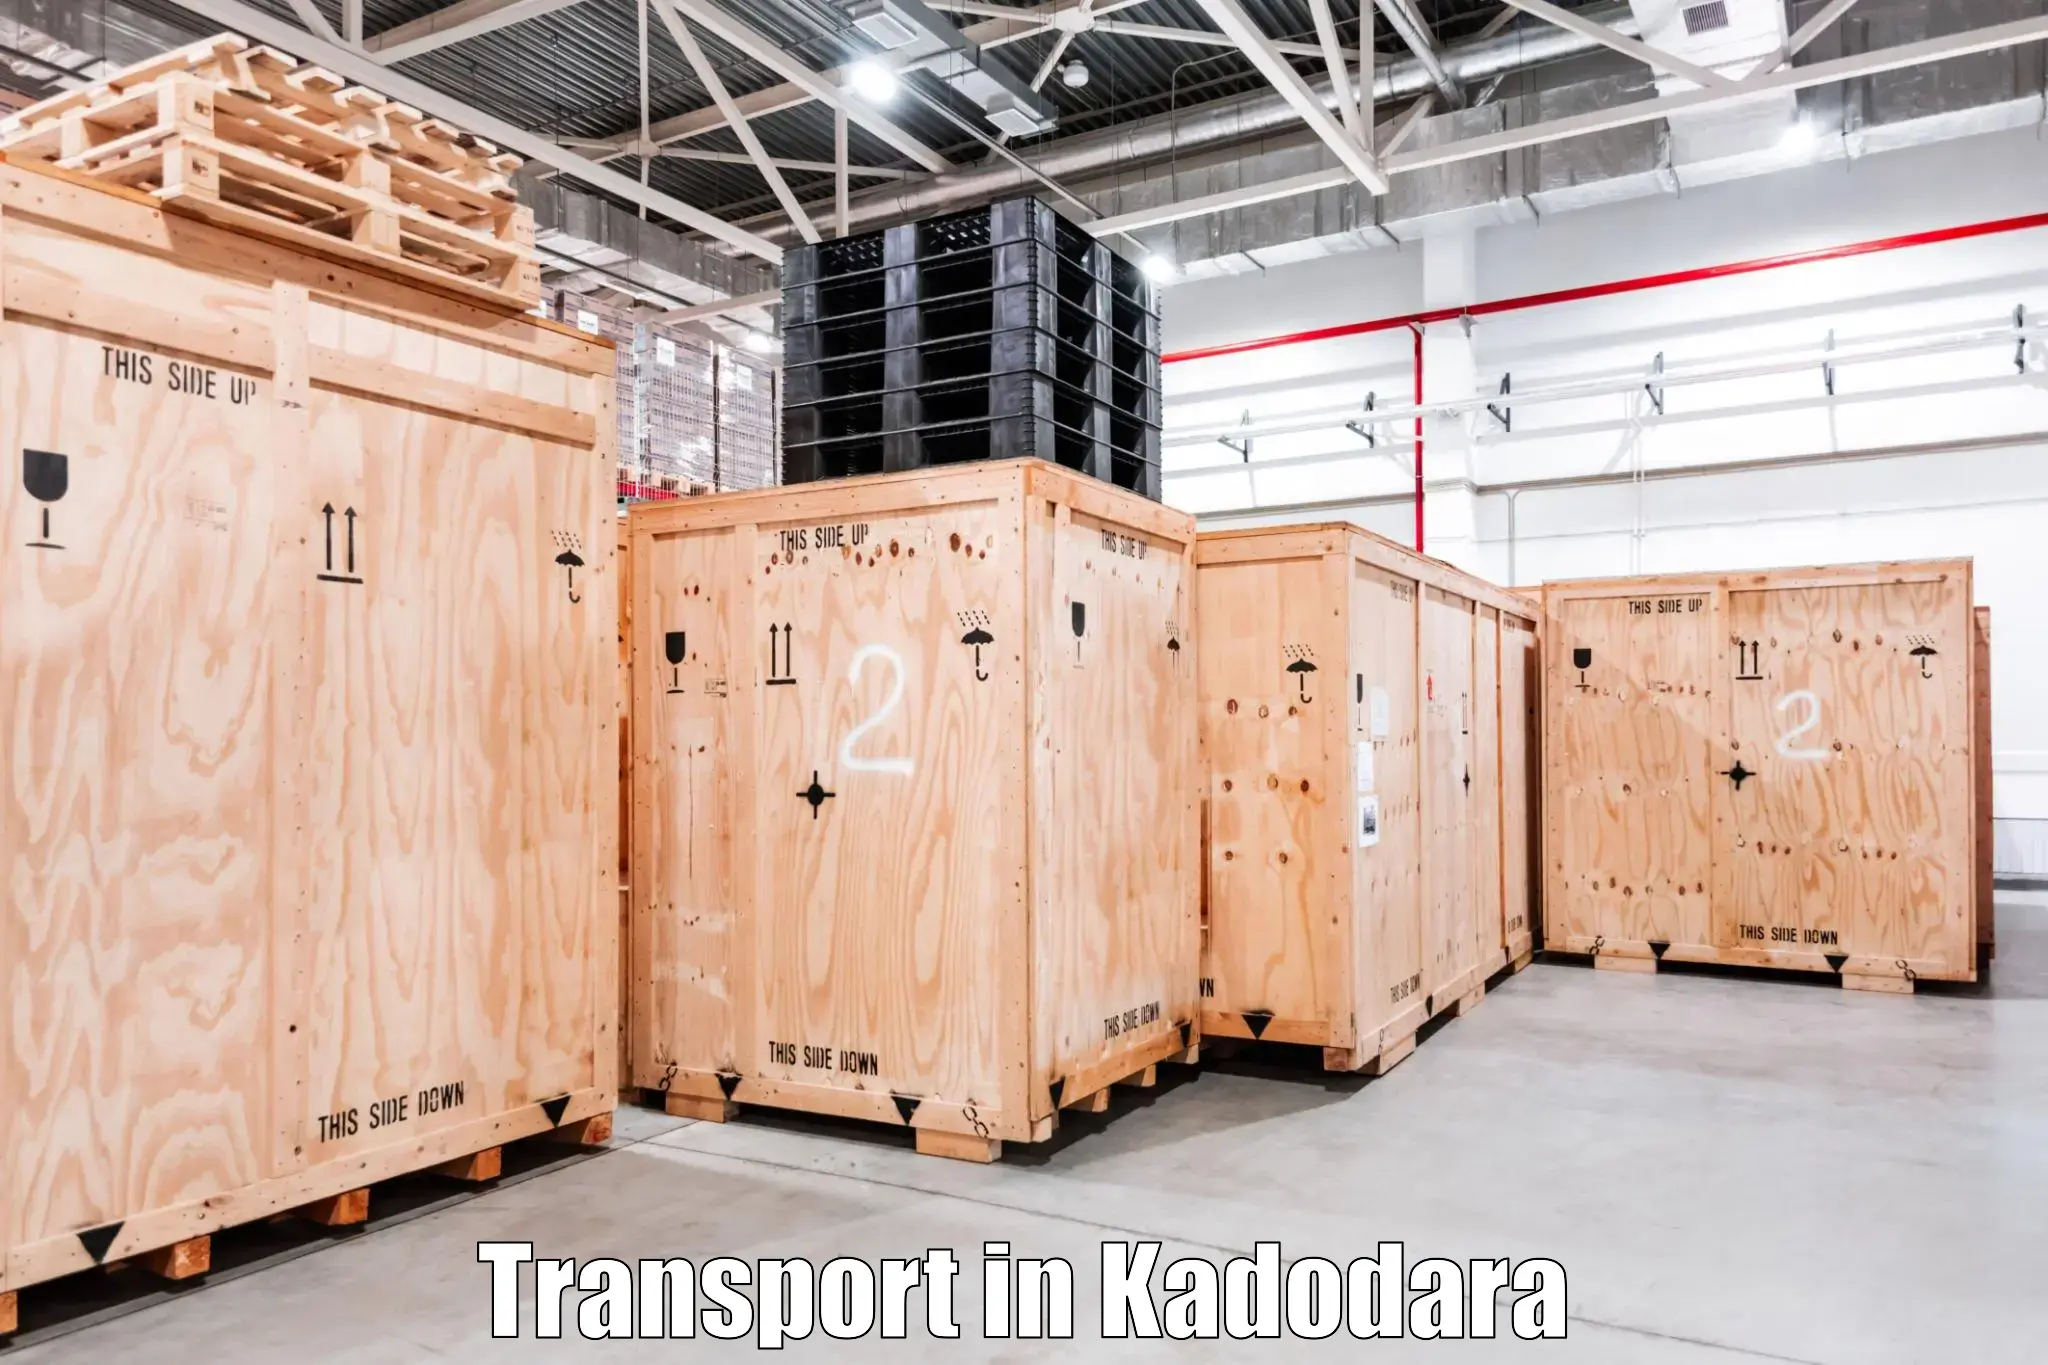 Air cargo transport services in Kadodara